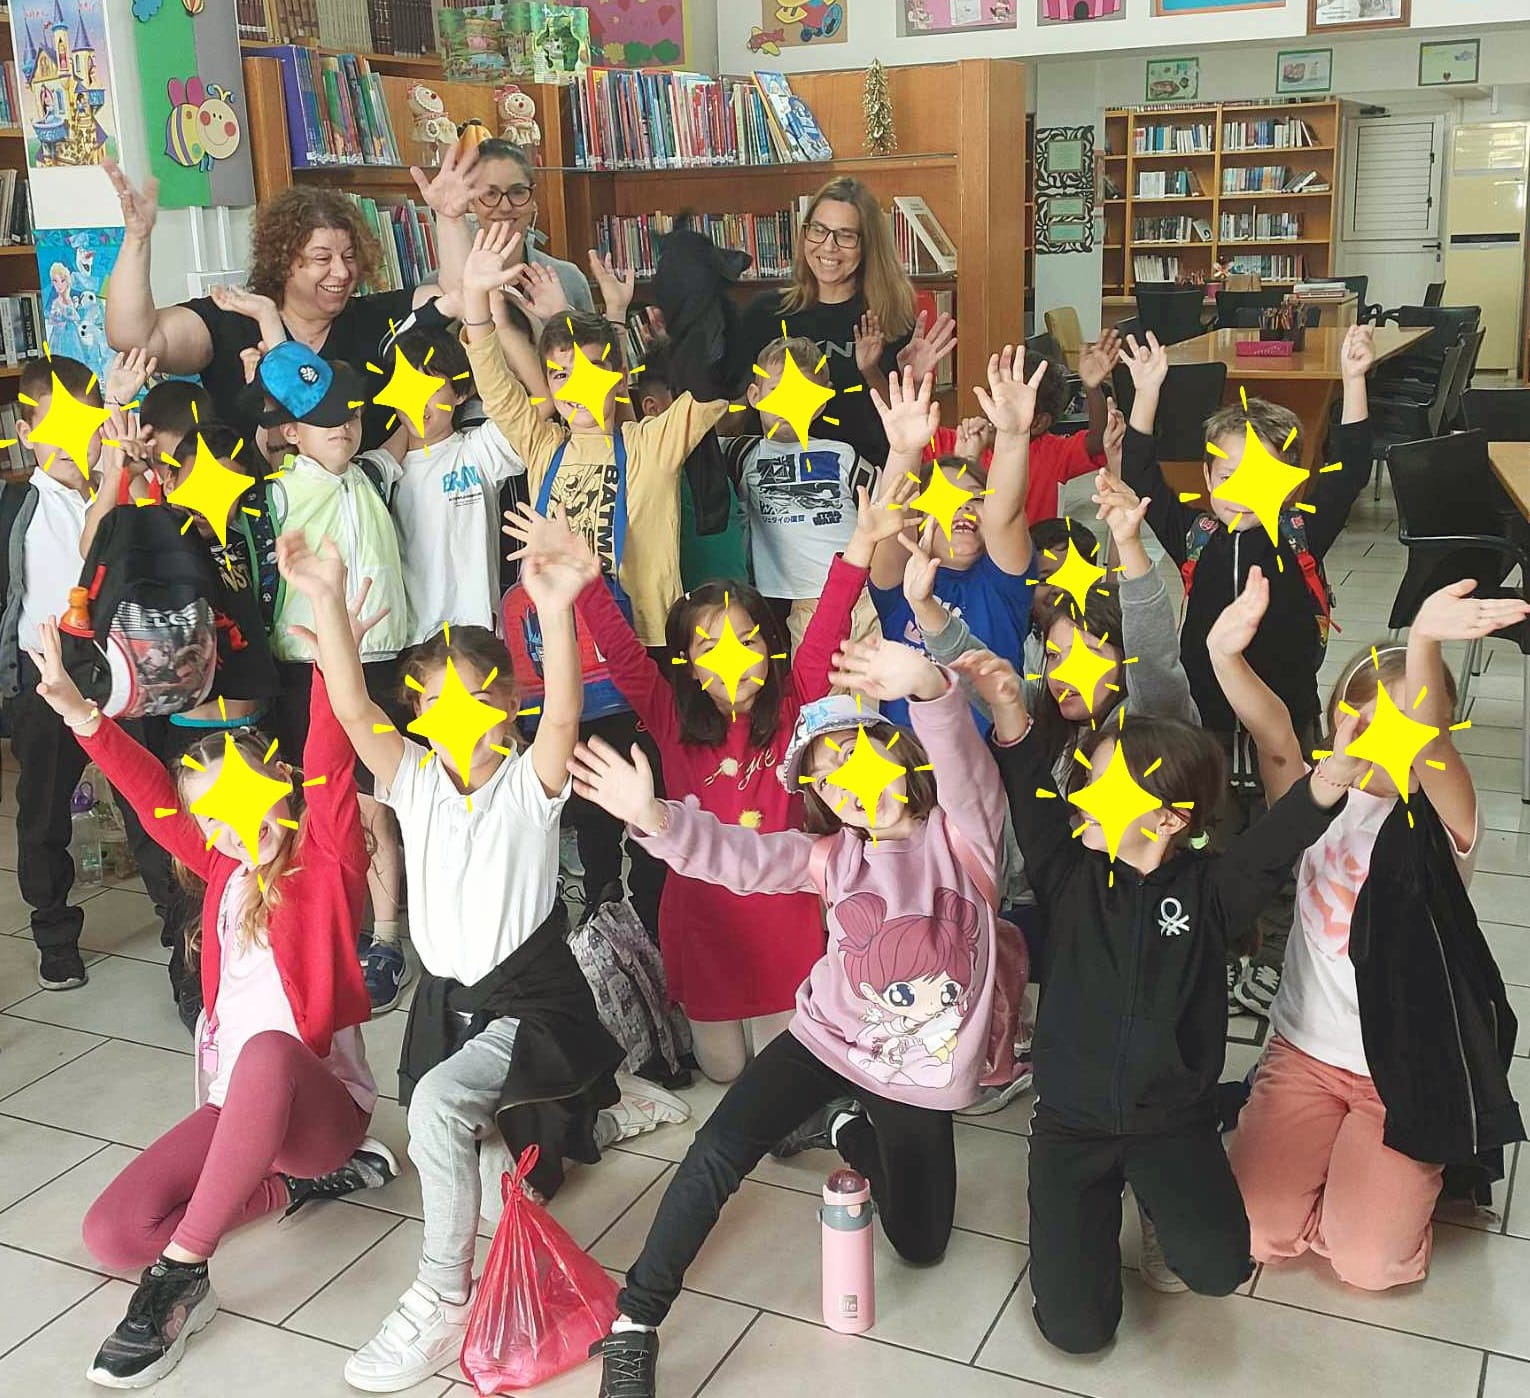 Η Δημοτική Βιβλιοθήκη Αραδίππου «Γιάγκος Κωνσταντινίδης» γιόρτασε την Παγκόσμια Ημέρα Παιδικού Βιβλίου με τα παιδιά του Δημοτικού Σχολείου Αγίου Λαζάρου Λάρνακας